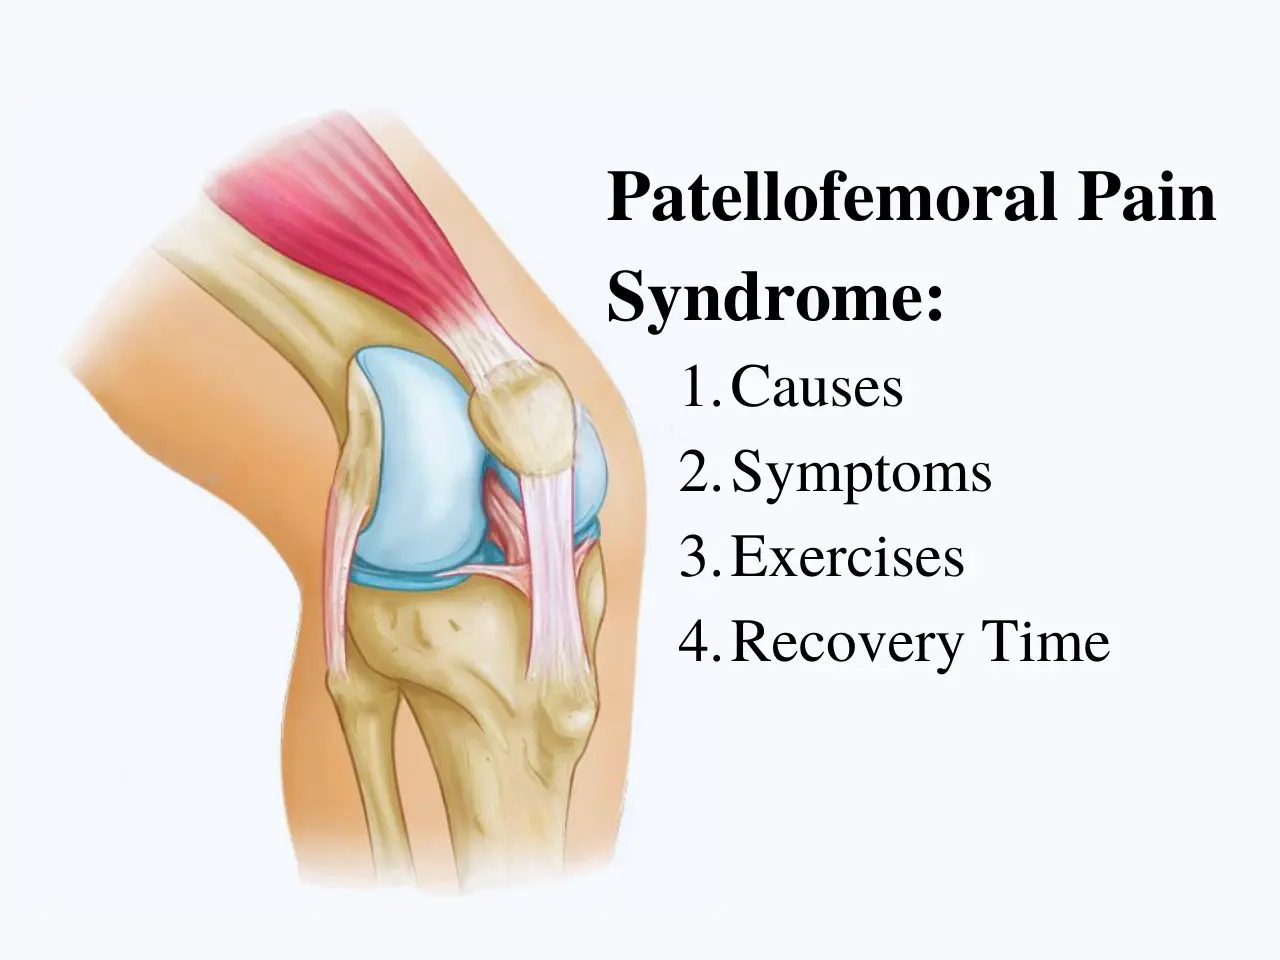 Patellofemoral Pain syndrome